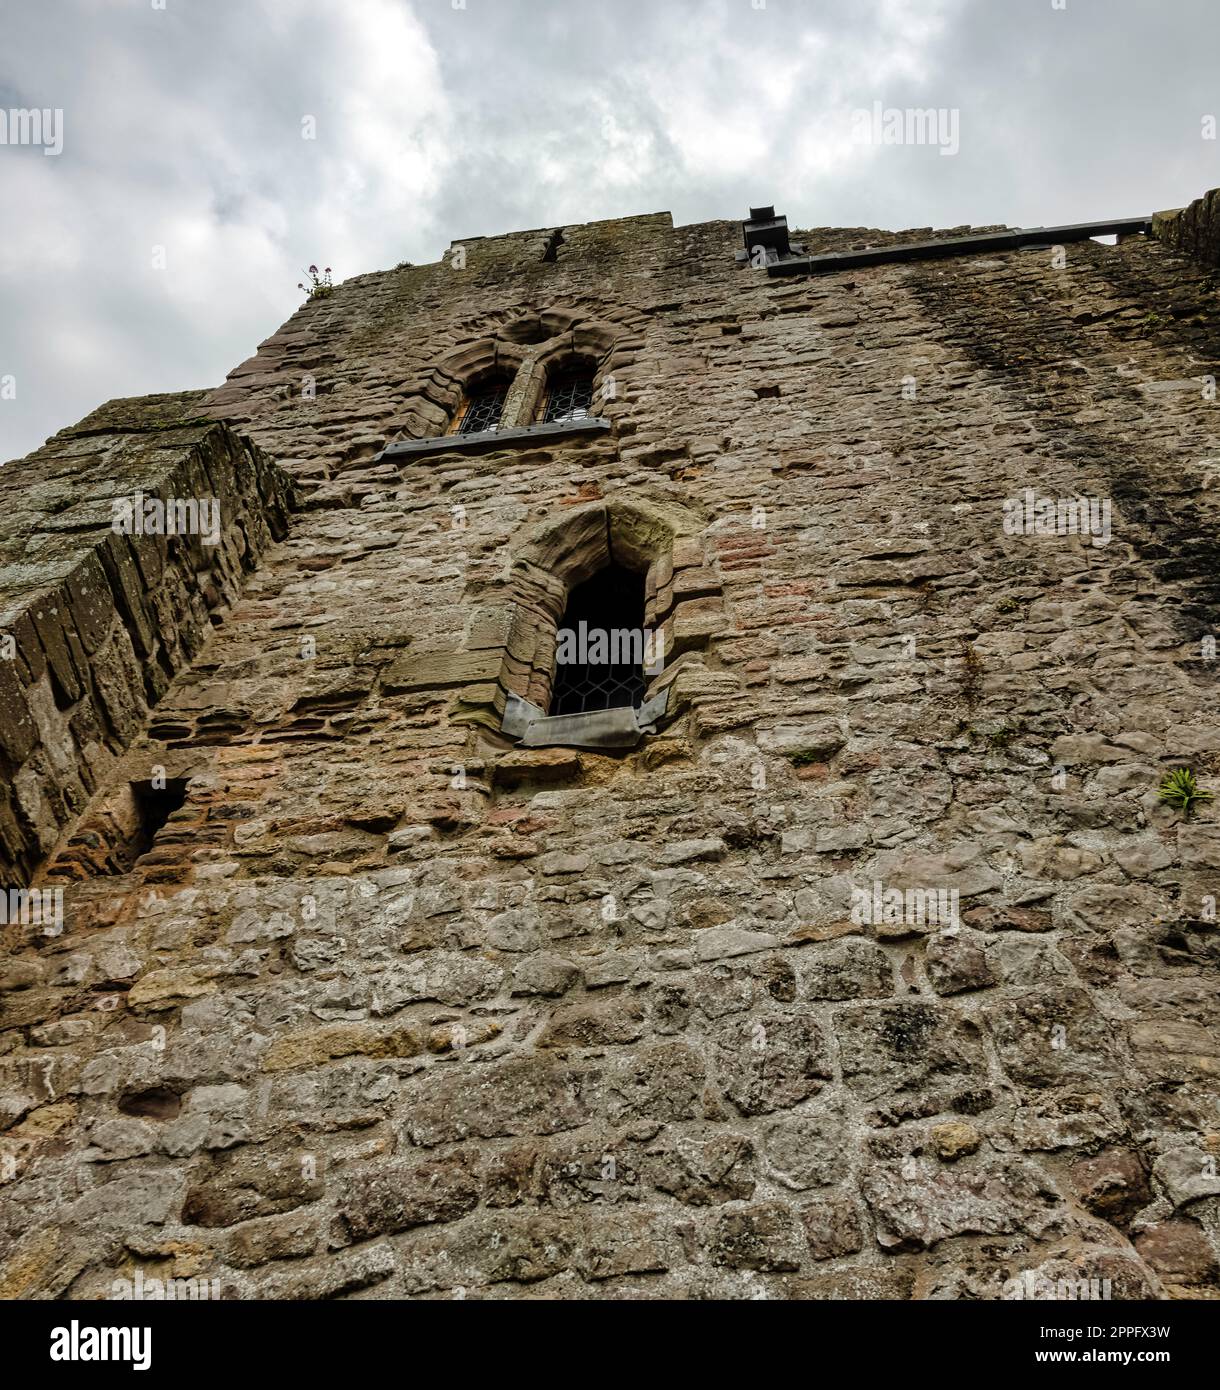 Resti del castello di Chepstow (Castell CAS-gwent) a Chepstow, Monmouthshire, Galles, Regno Unito Foto Stock